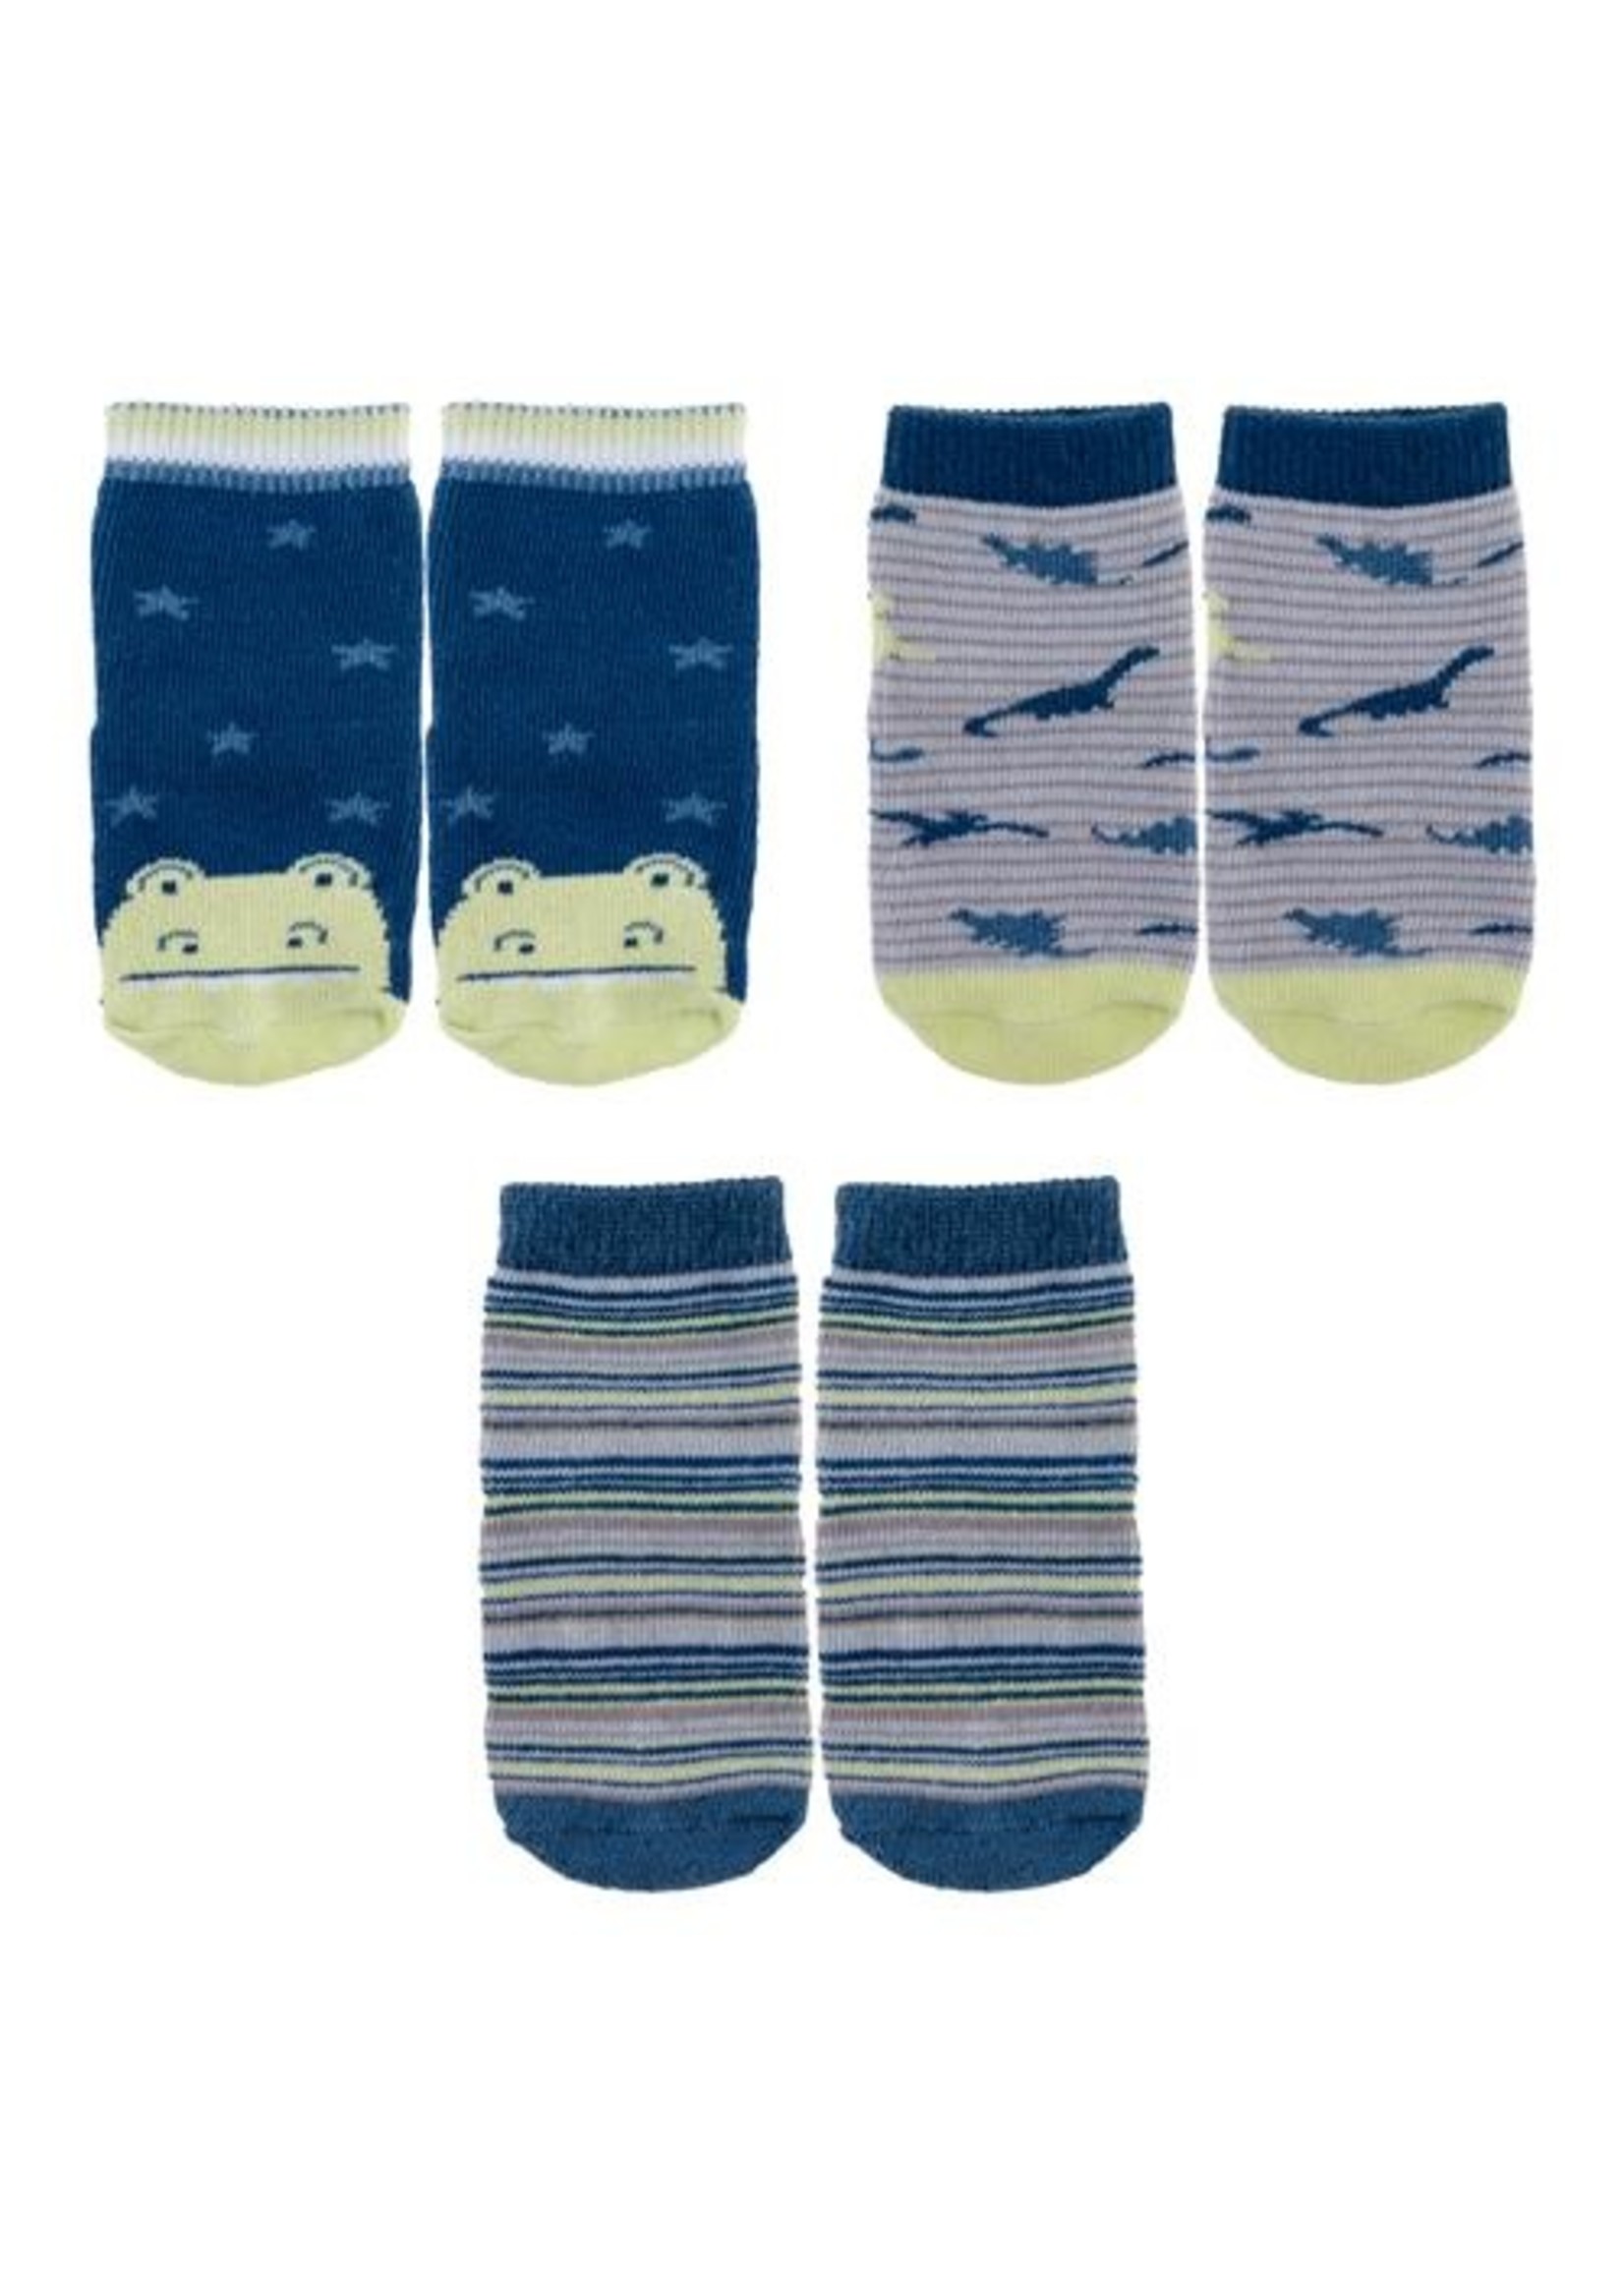 stephen joseph Baby Socks 3 Pack - Dino